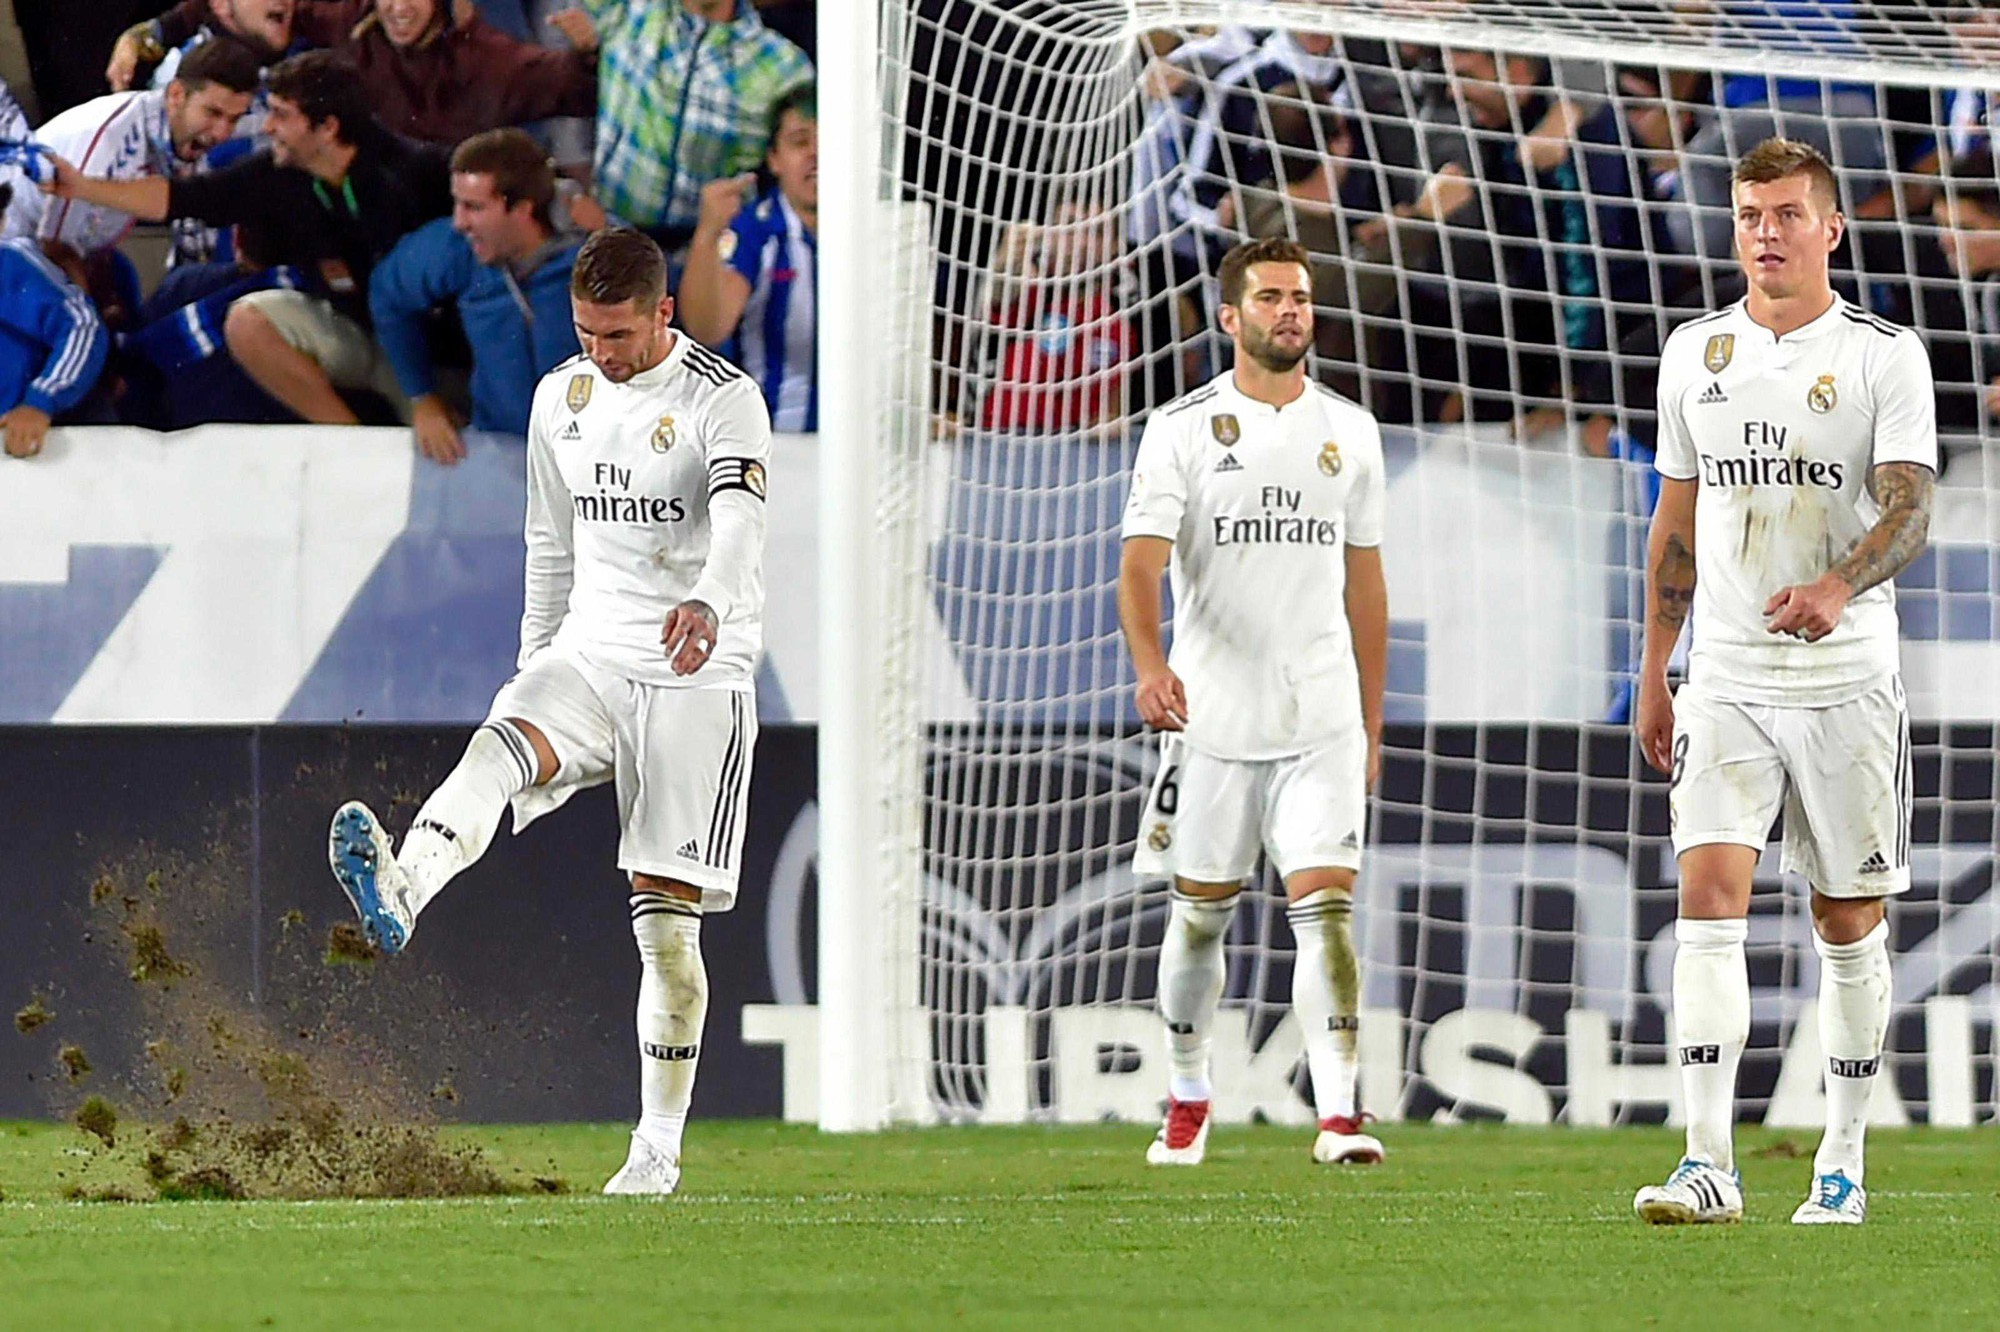 Lật tẩy 2 bộ mặt trái ngược cho thấy sự thiếu hiệu quả của Real Madrid tại Champions League - Ảnh 5.